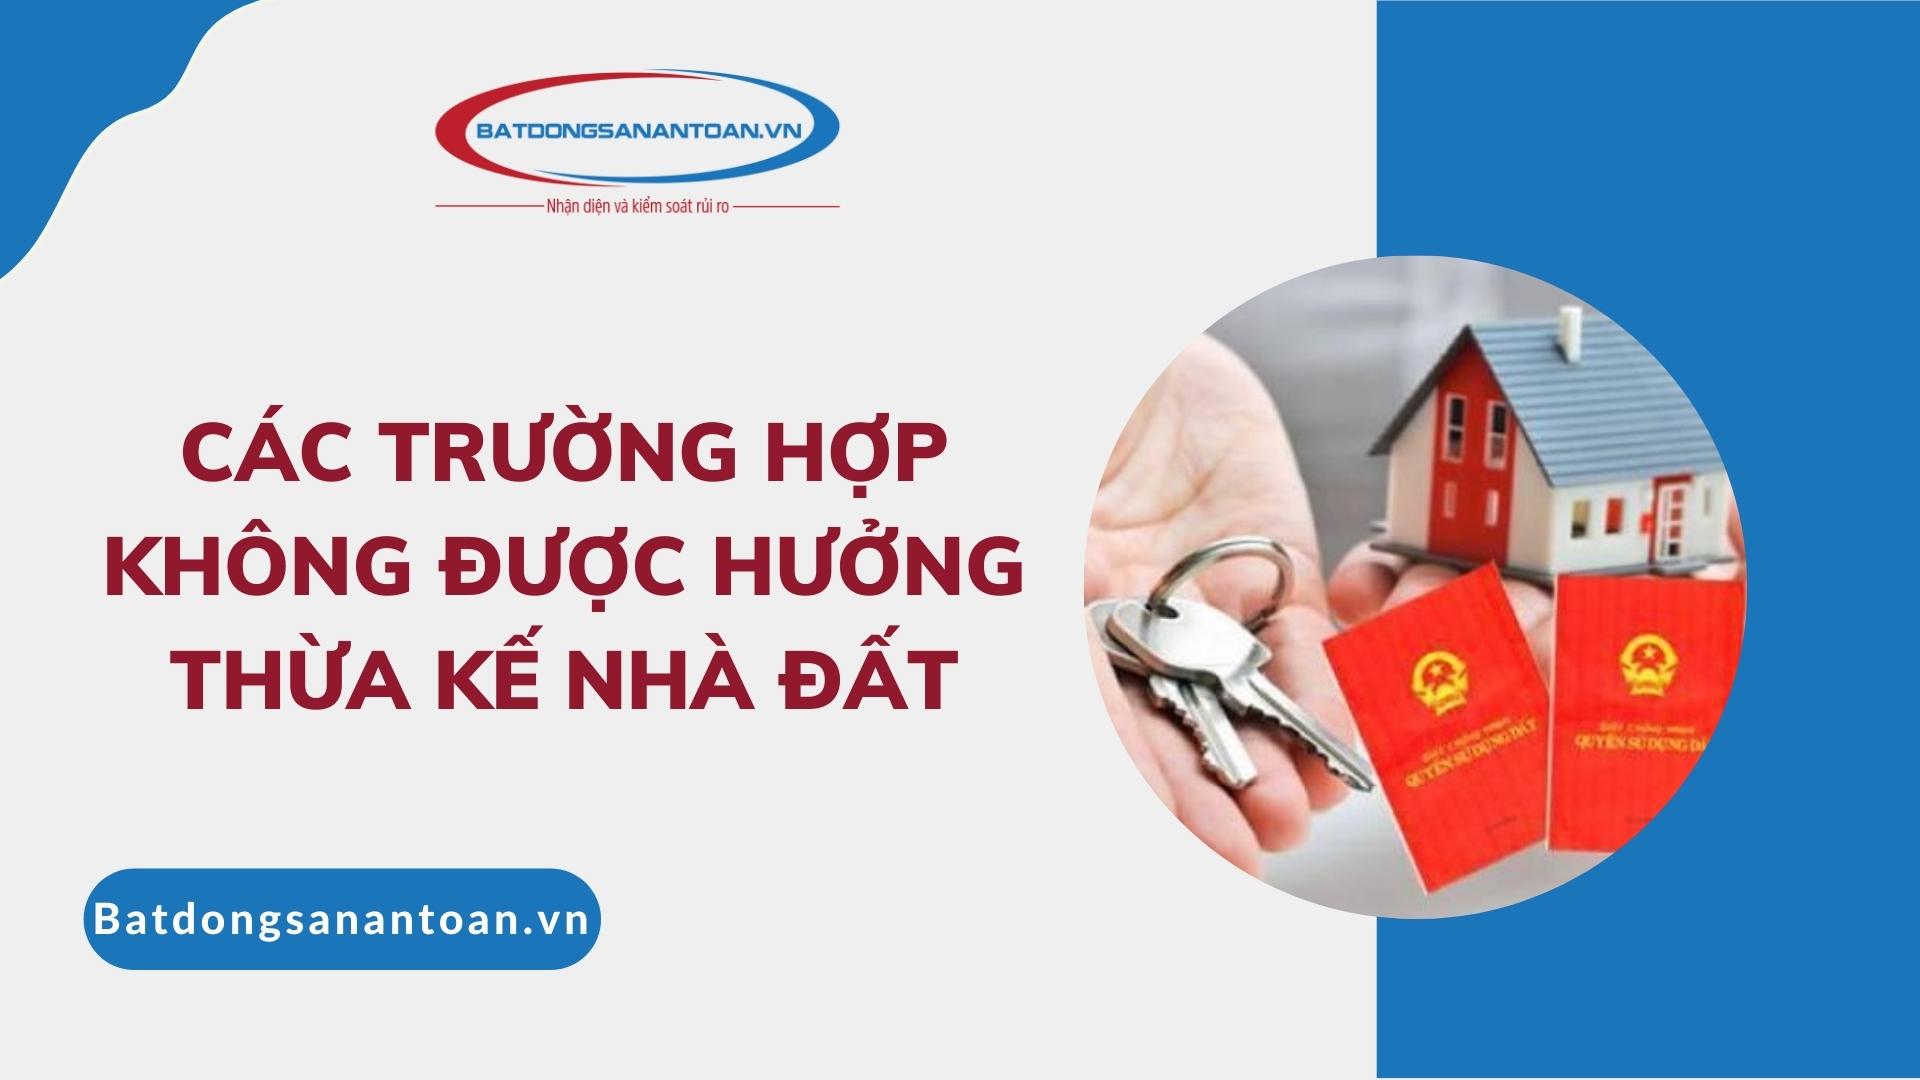 Cac Truong Hop Khong Duoc Huong Thua Ke Nha Dat